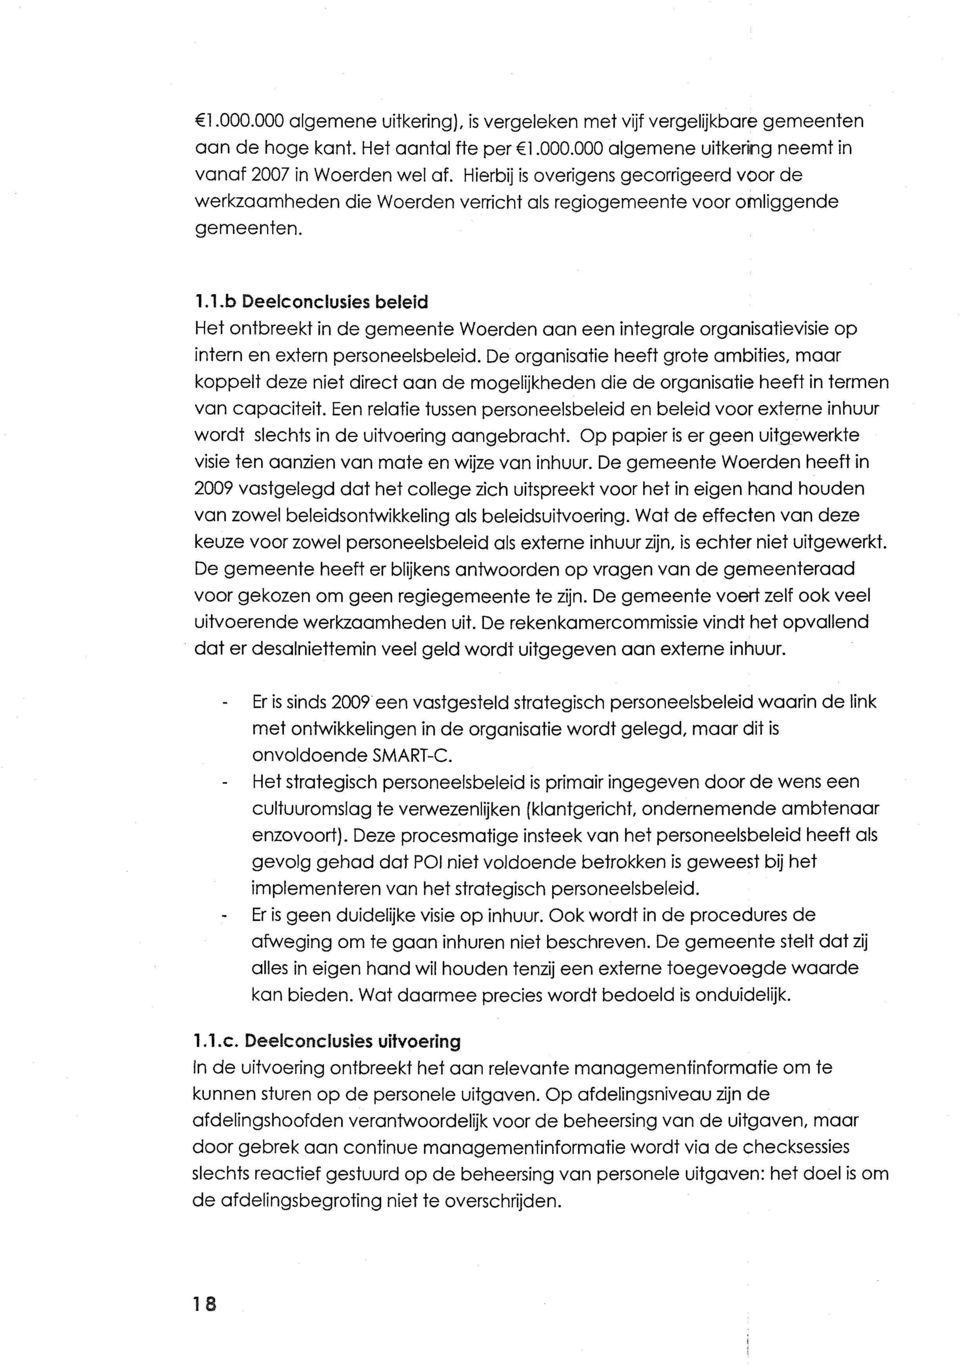 1.b Deelconclusies beleid Het ontbreekt in de gemeente Woerden aan een integrale organisatievisie op intern en extern personeelsbeleid.